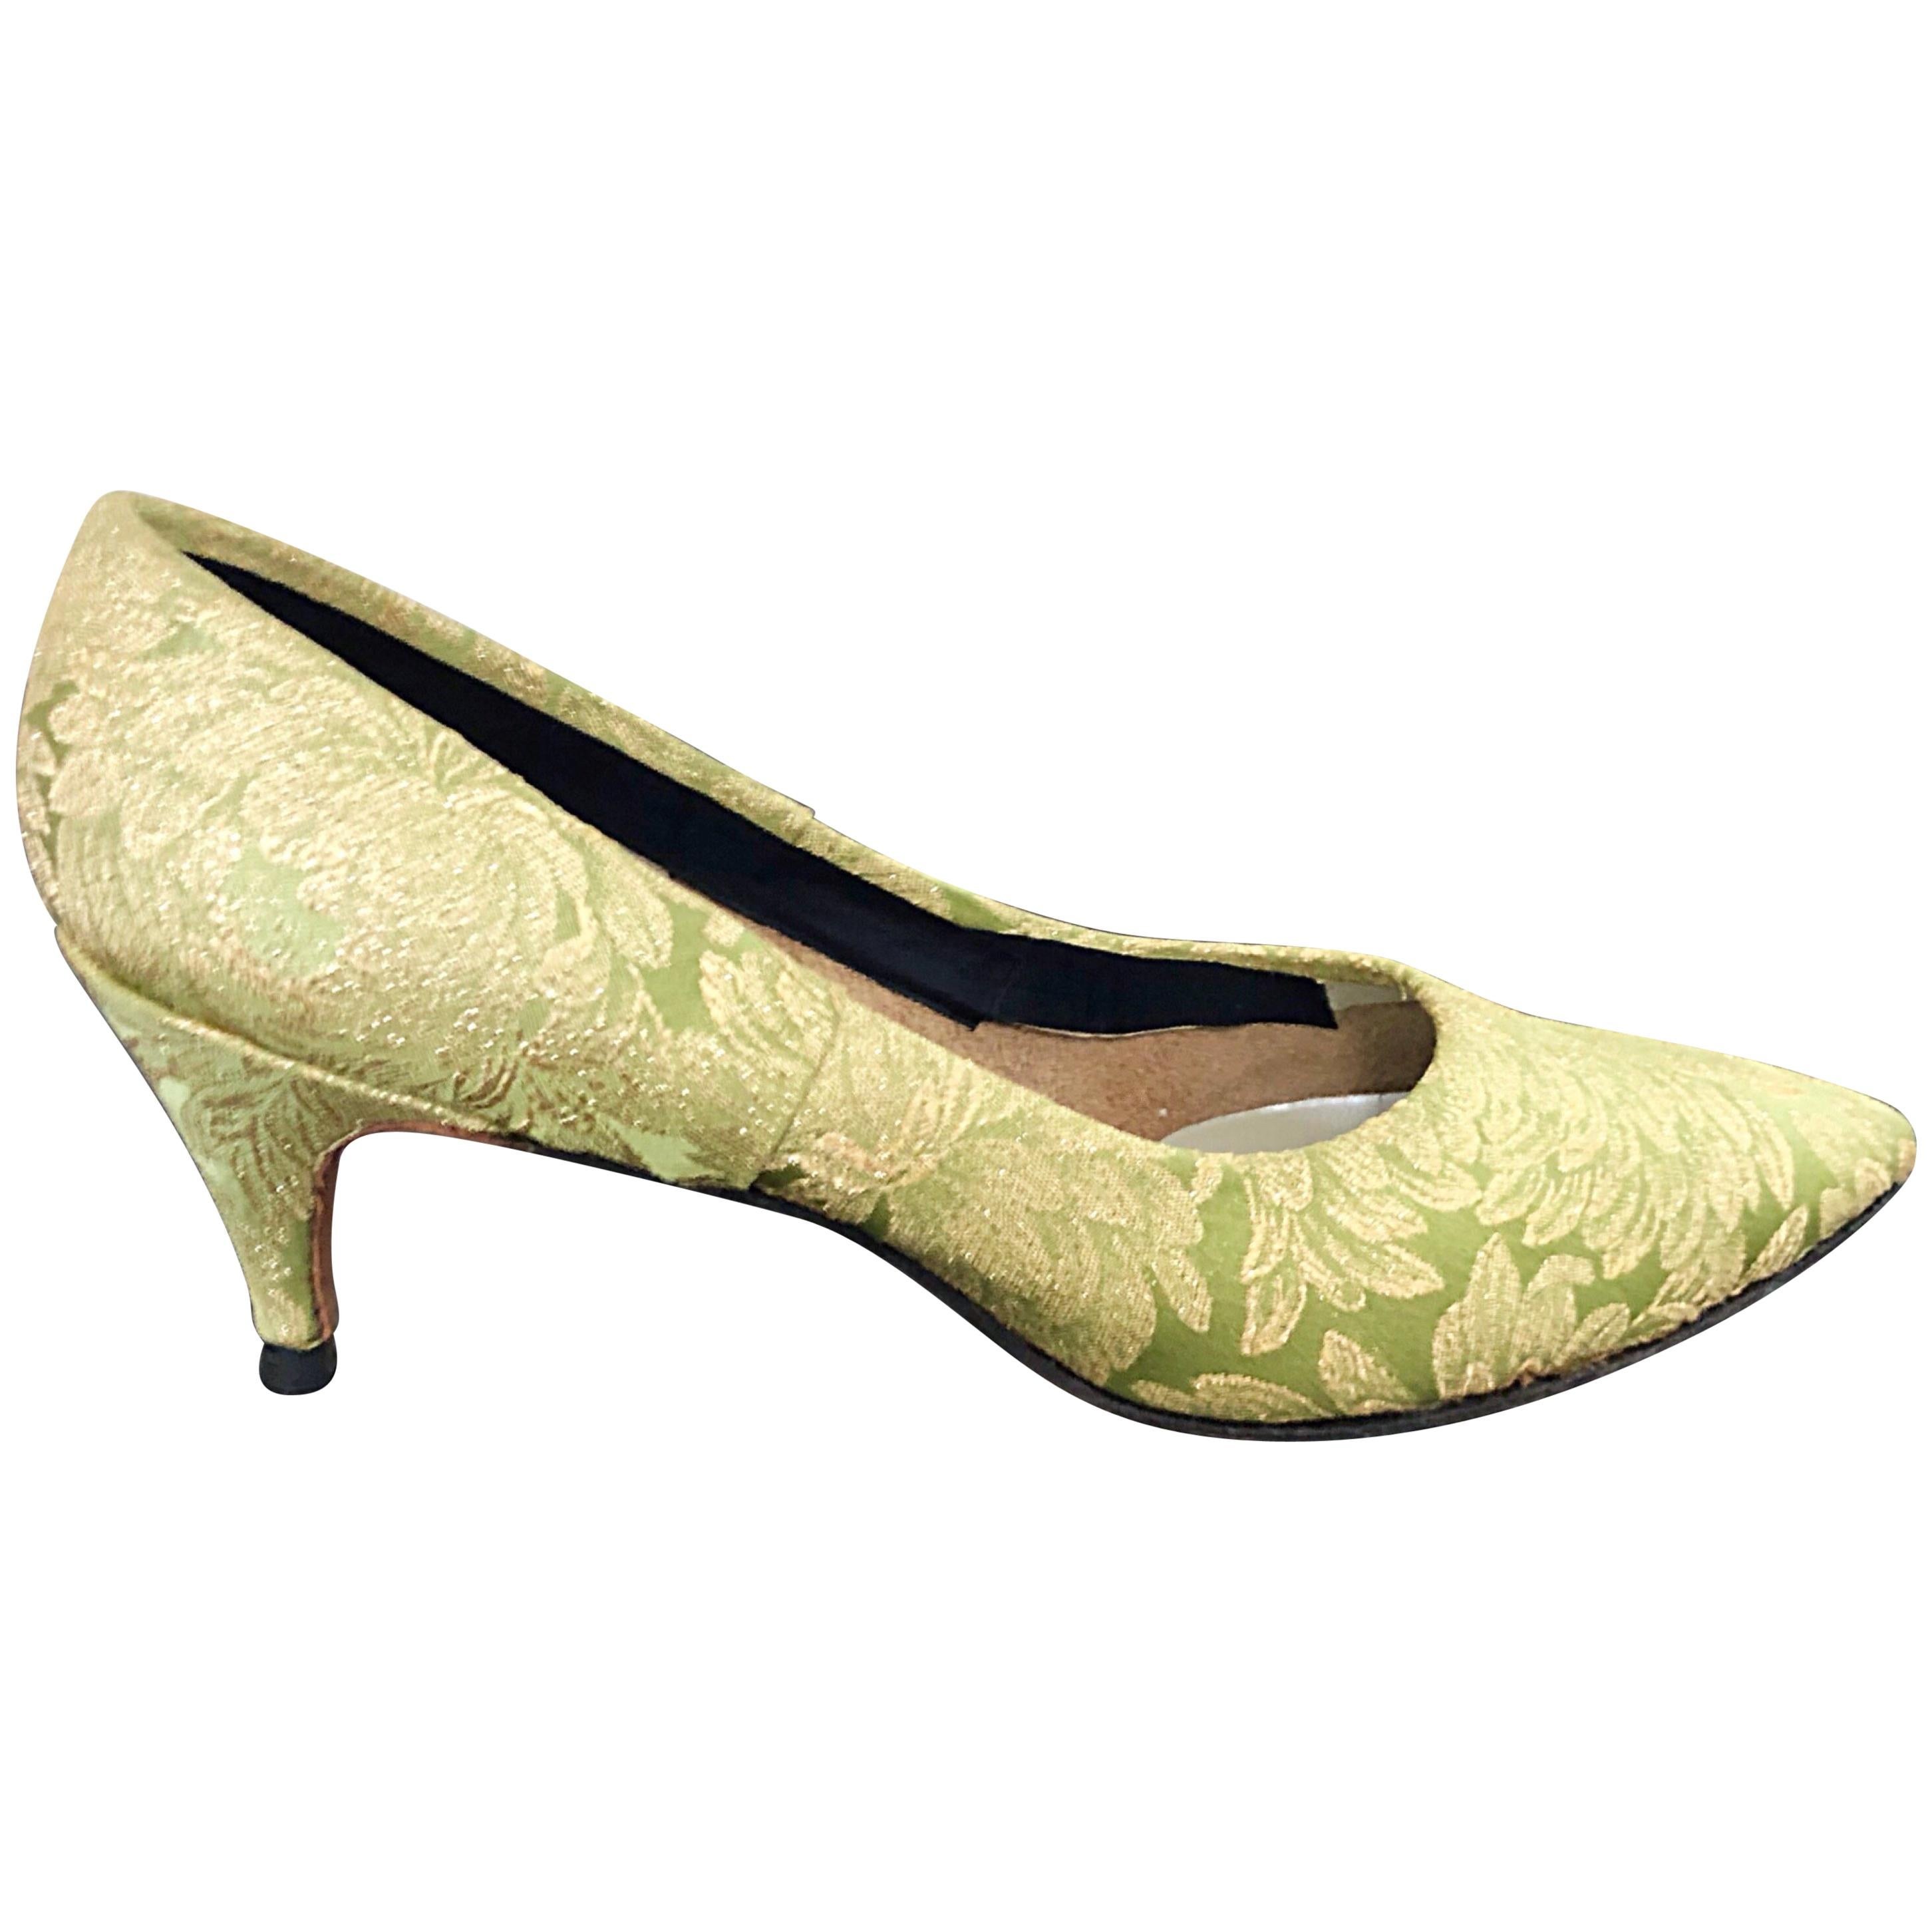 Gaymode - Chaussures à talons hauts en brocart de soie vert chartreuse et or, taille 8/8, années 1950 